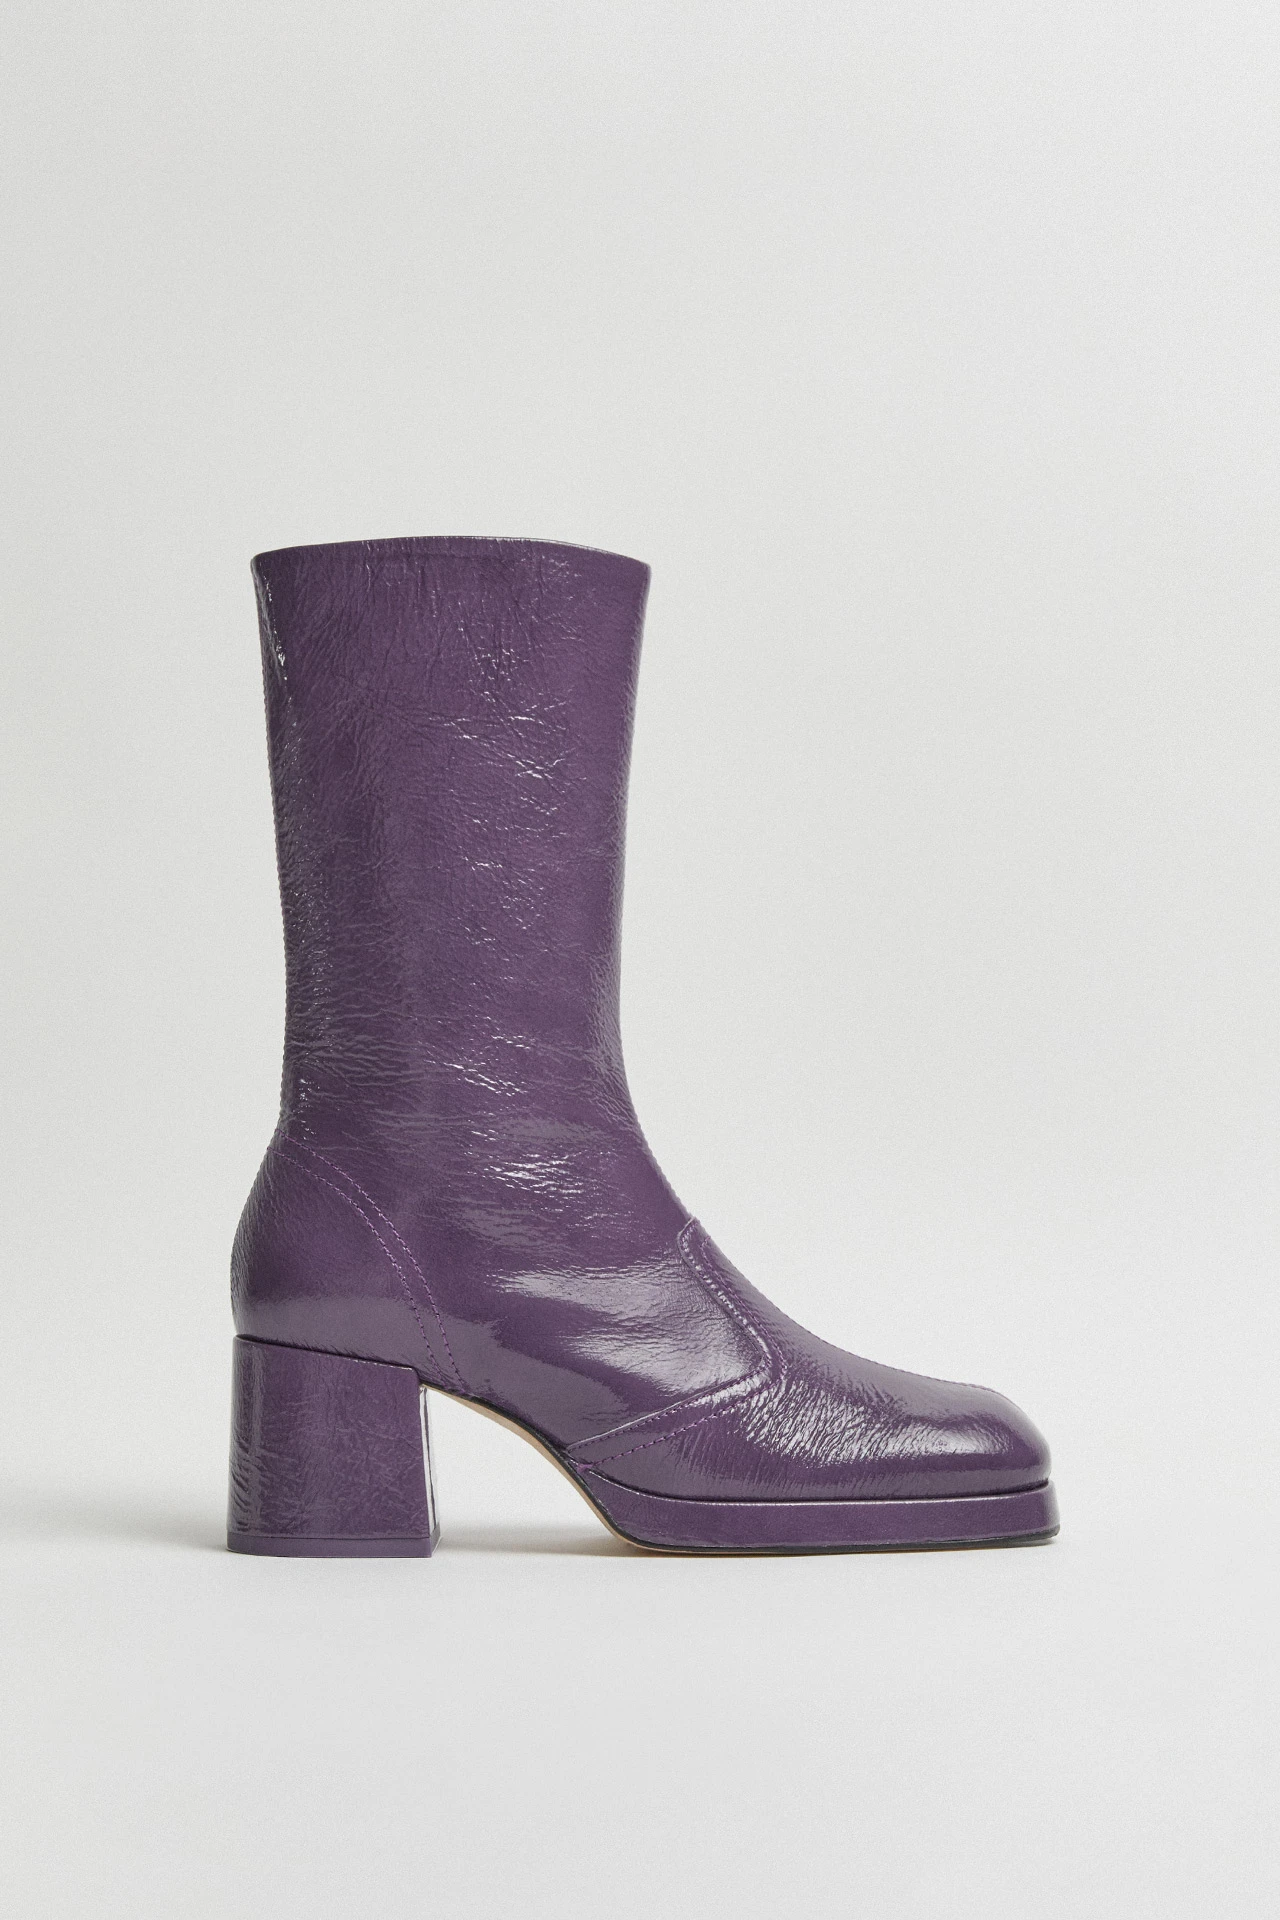 Miista-cass-purple-boots-01